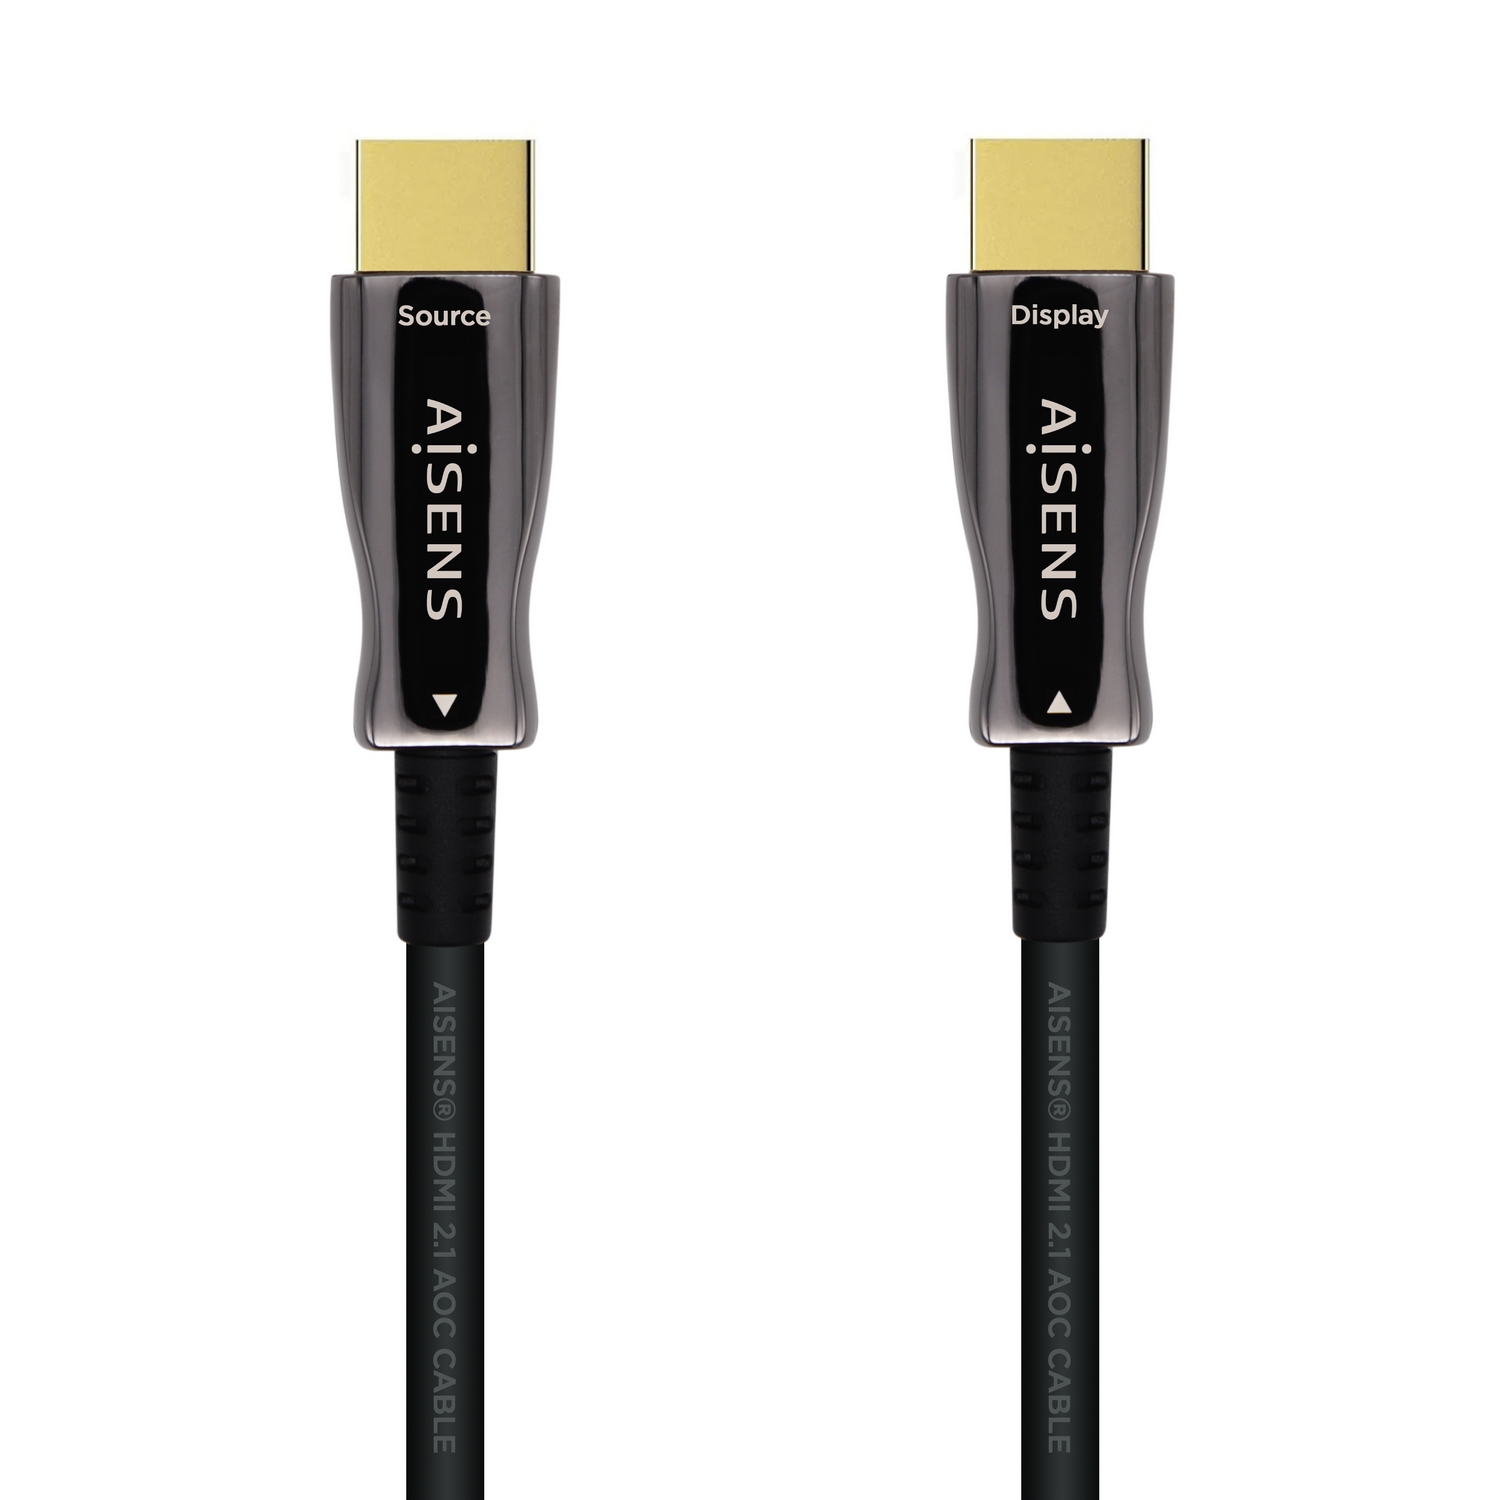 Cable HDMI 5 Metros Full HD 3D V1.4 PVC Negro HDMI a HDMI